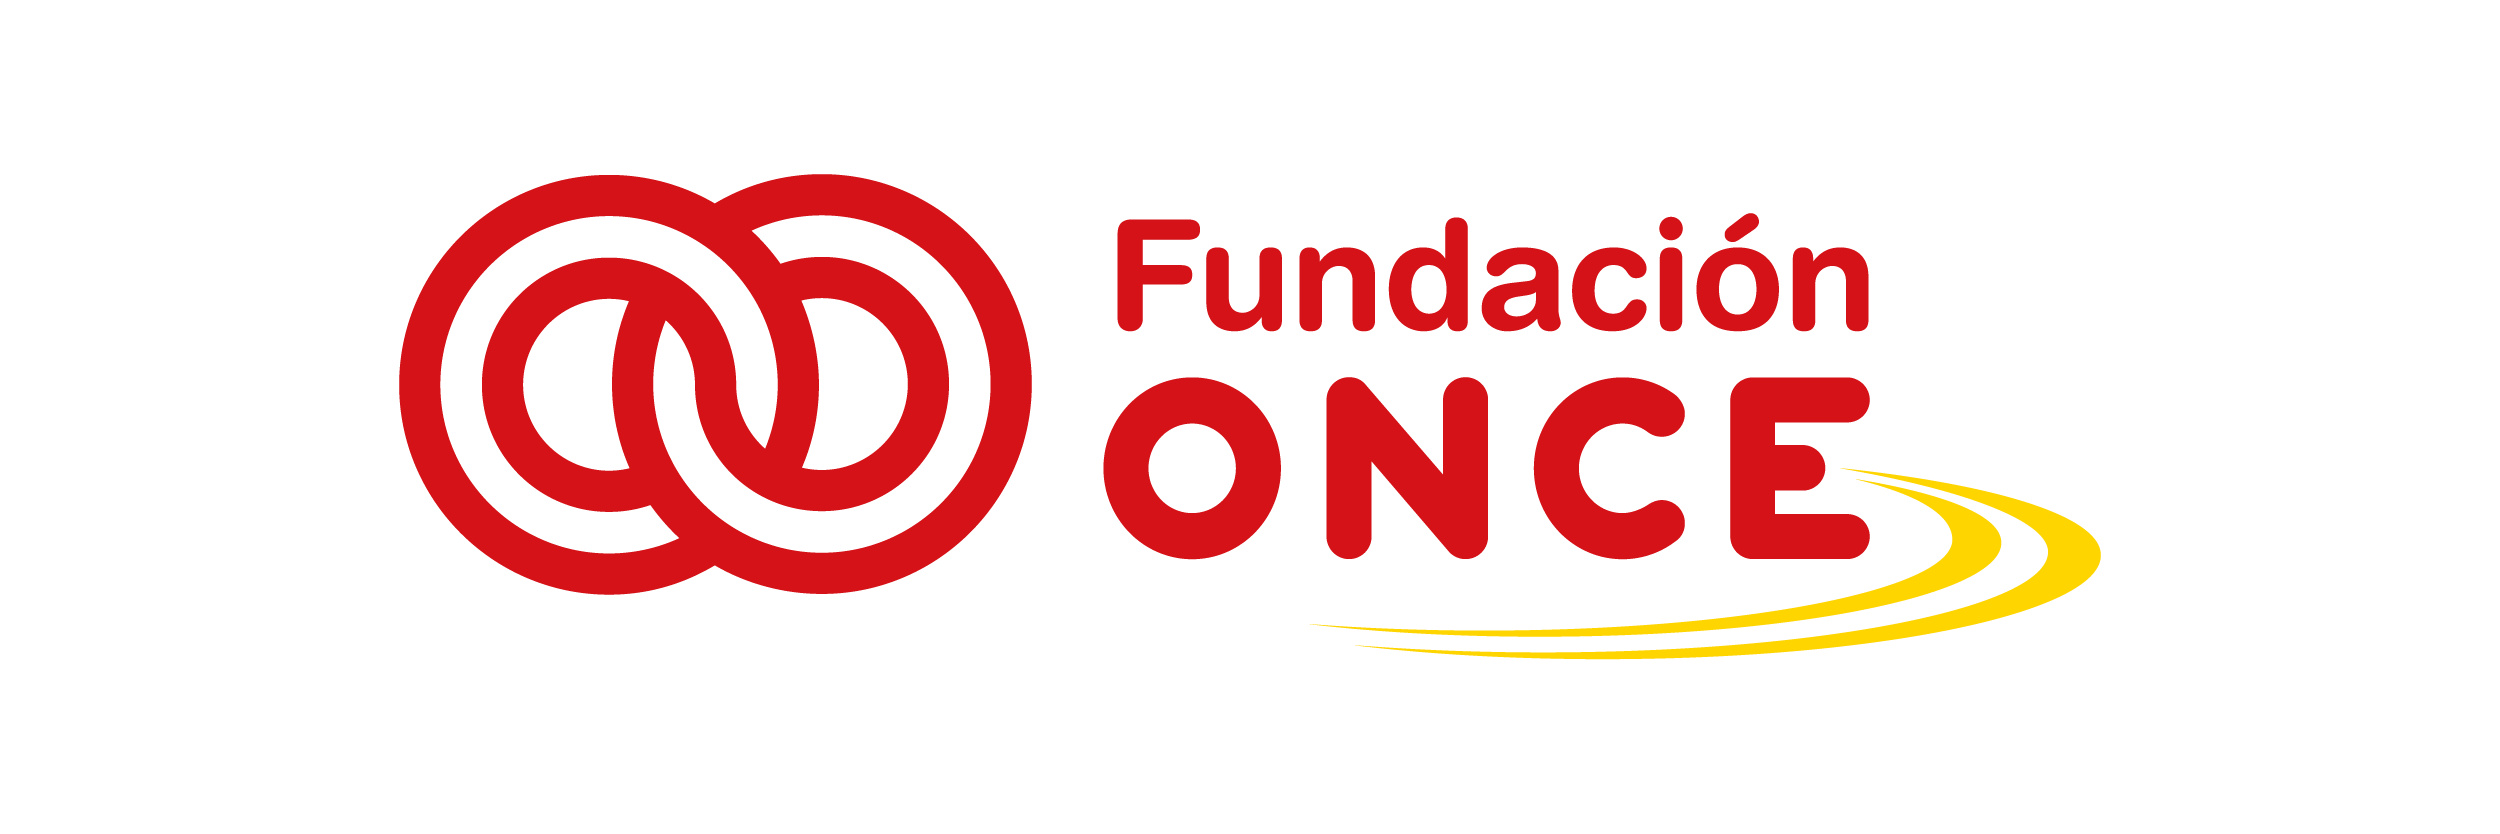 FundacionOnce_Mesa de trabajo 1